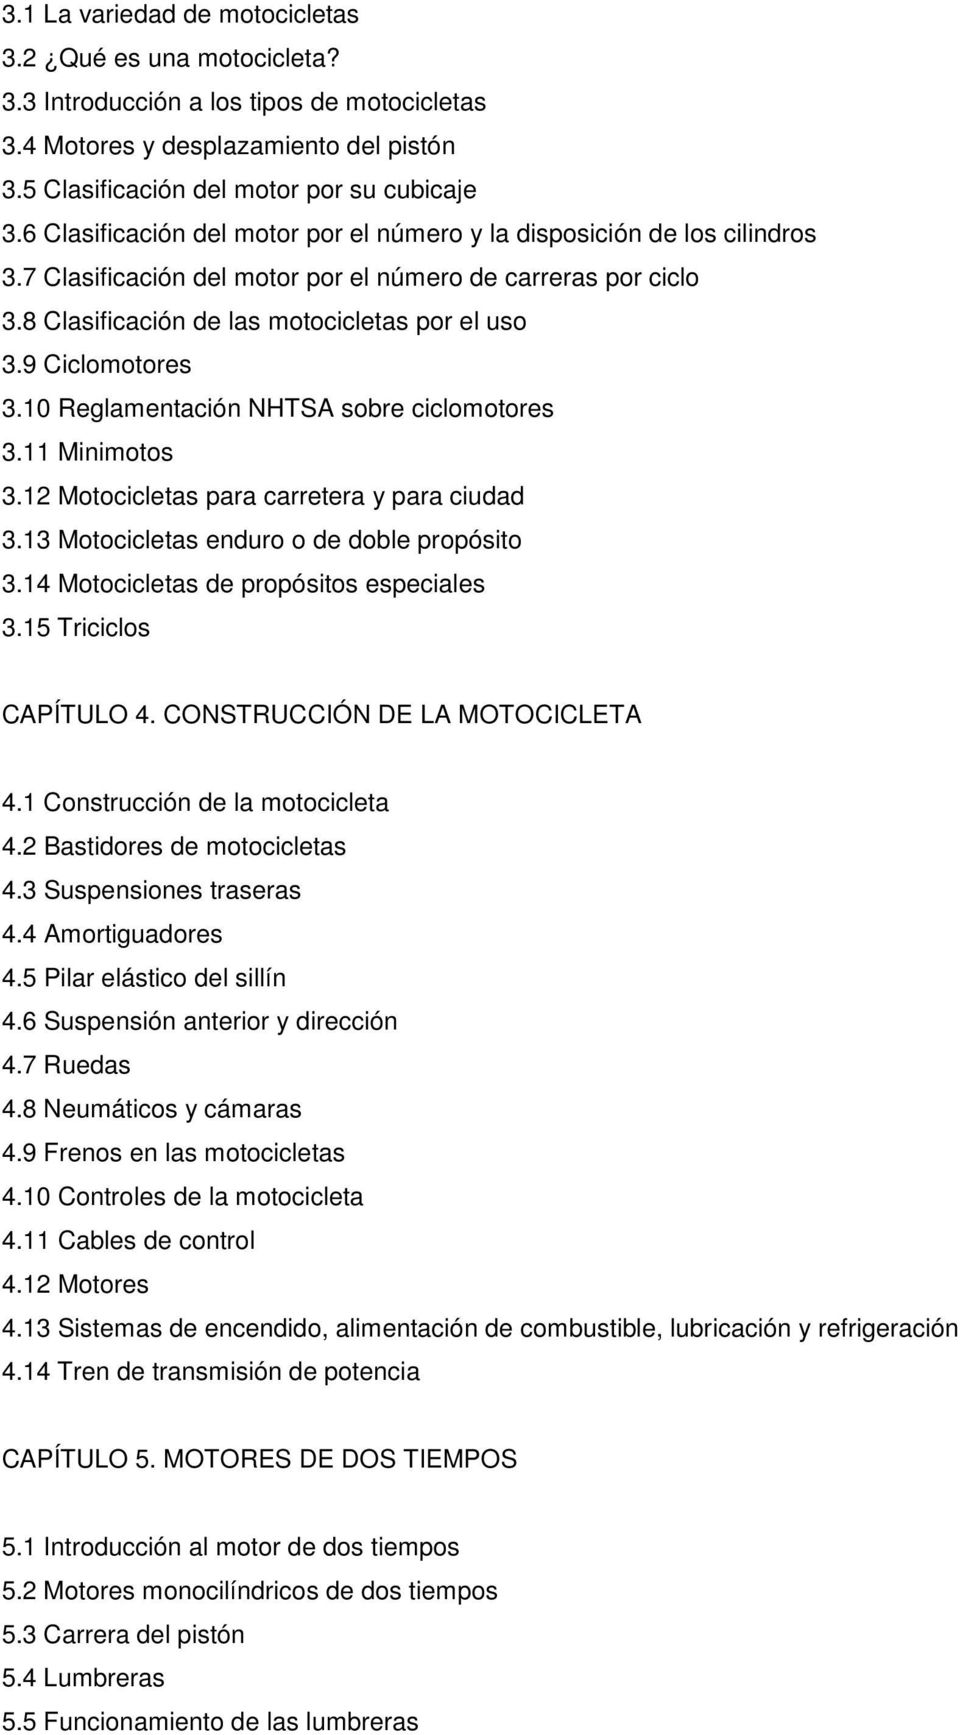 9 Ciclomotores 3.10 Reglamentación NHTSA sobre ciclomotores 3.11 Minimotos 3.12 Motocicletas para carretera y para ciudad 3.13 Motocicletas enduro o de doble propósito 3.